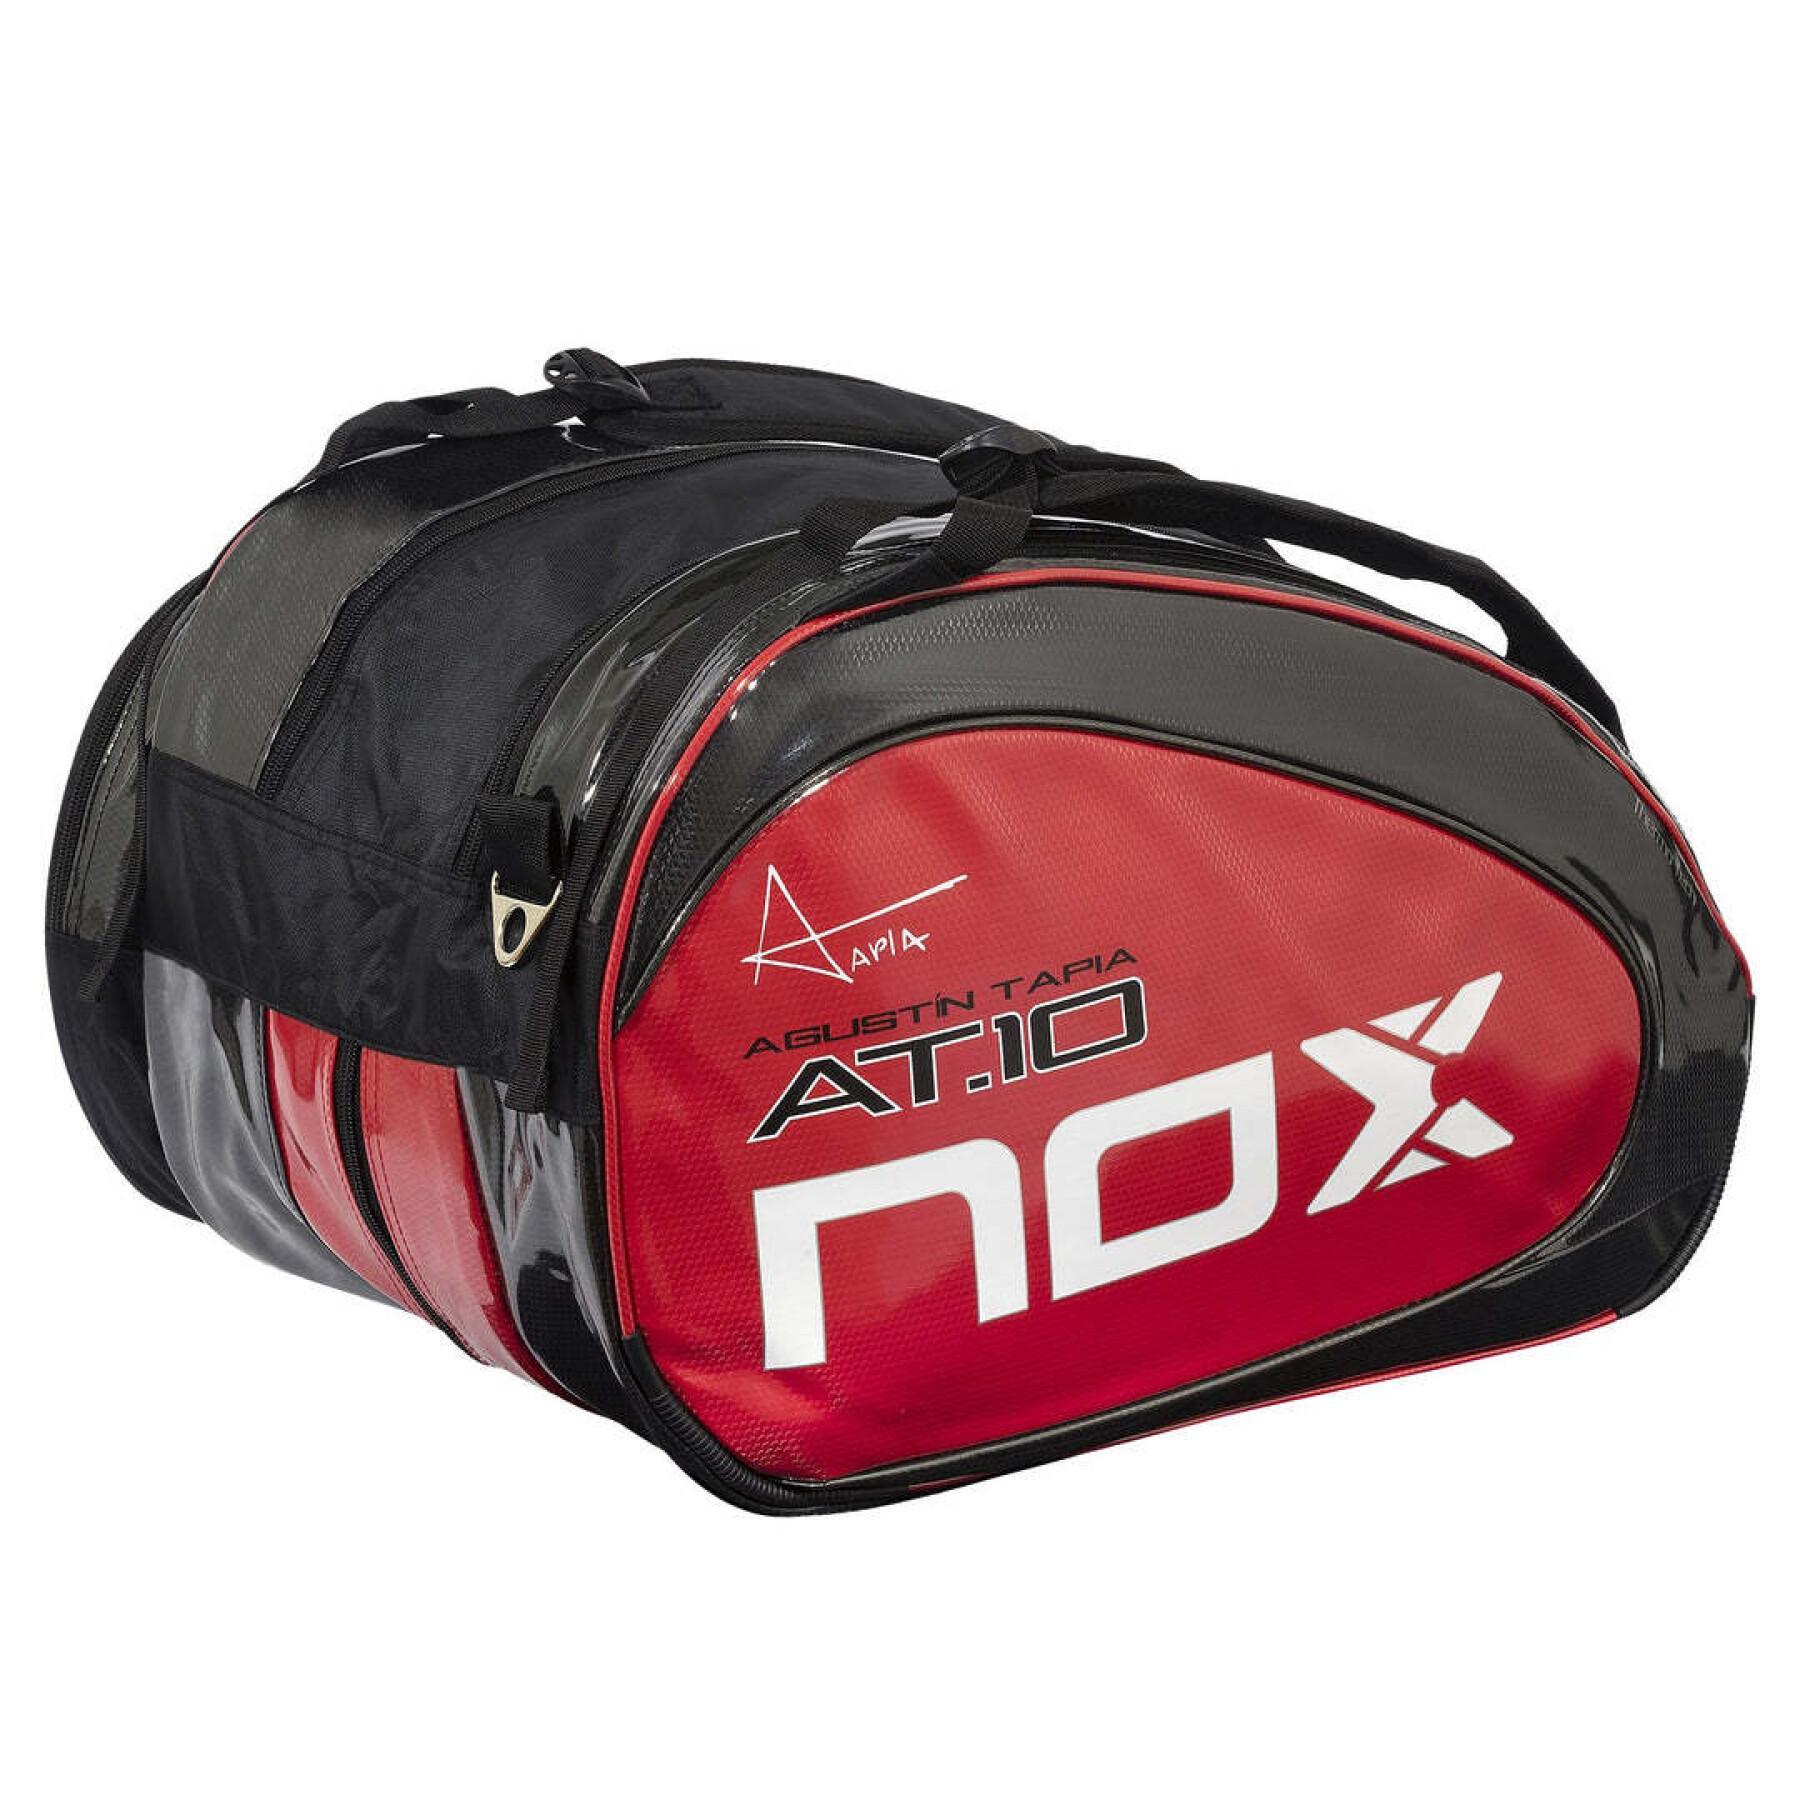 Padel racket väska Nox AT10 Team